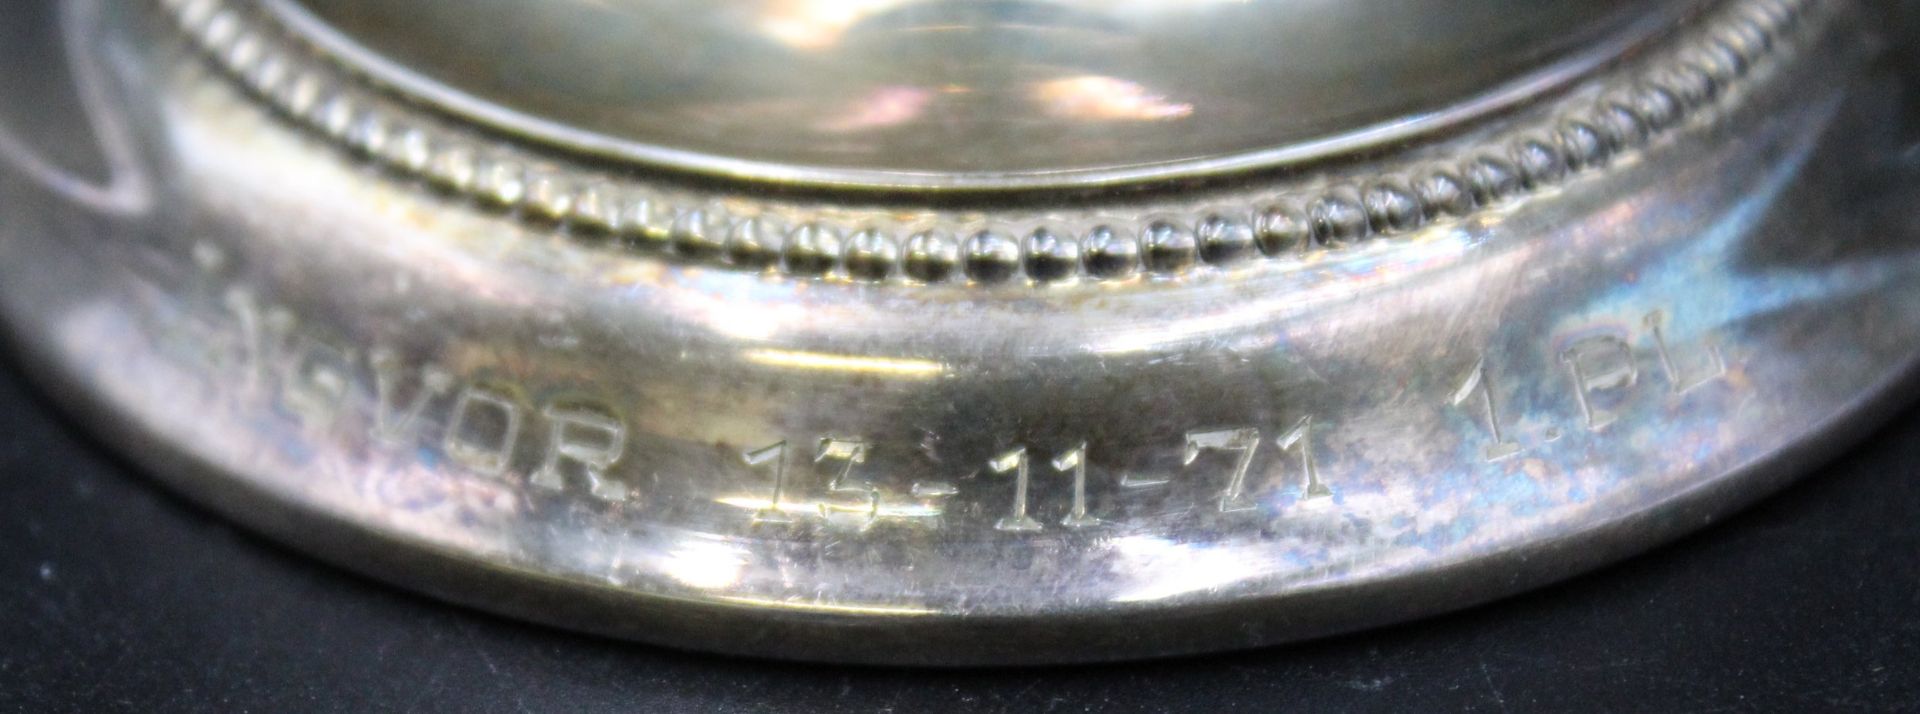 Leuchter, Sven Toxvaerd, 830er Silber, gefüllter Stand, Stand mit Gravur und Datierung, H-6,7cm, Ge - Bild 2 aus 5